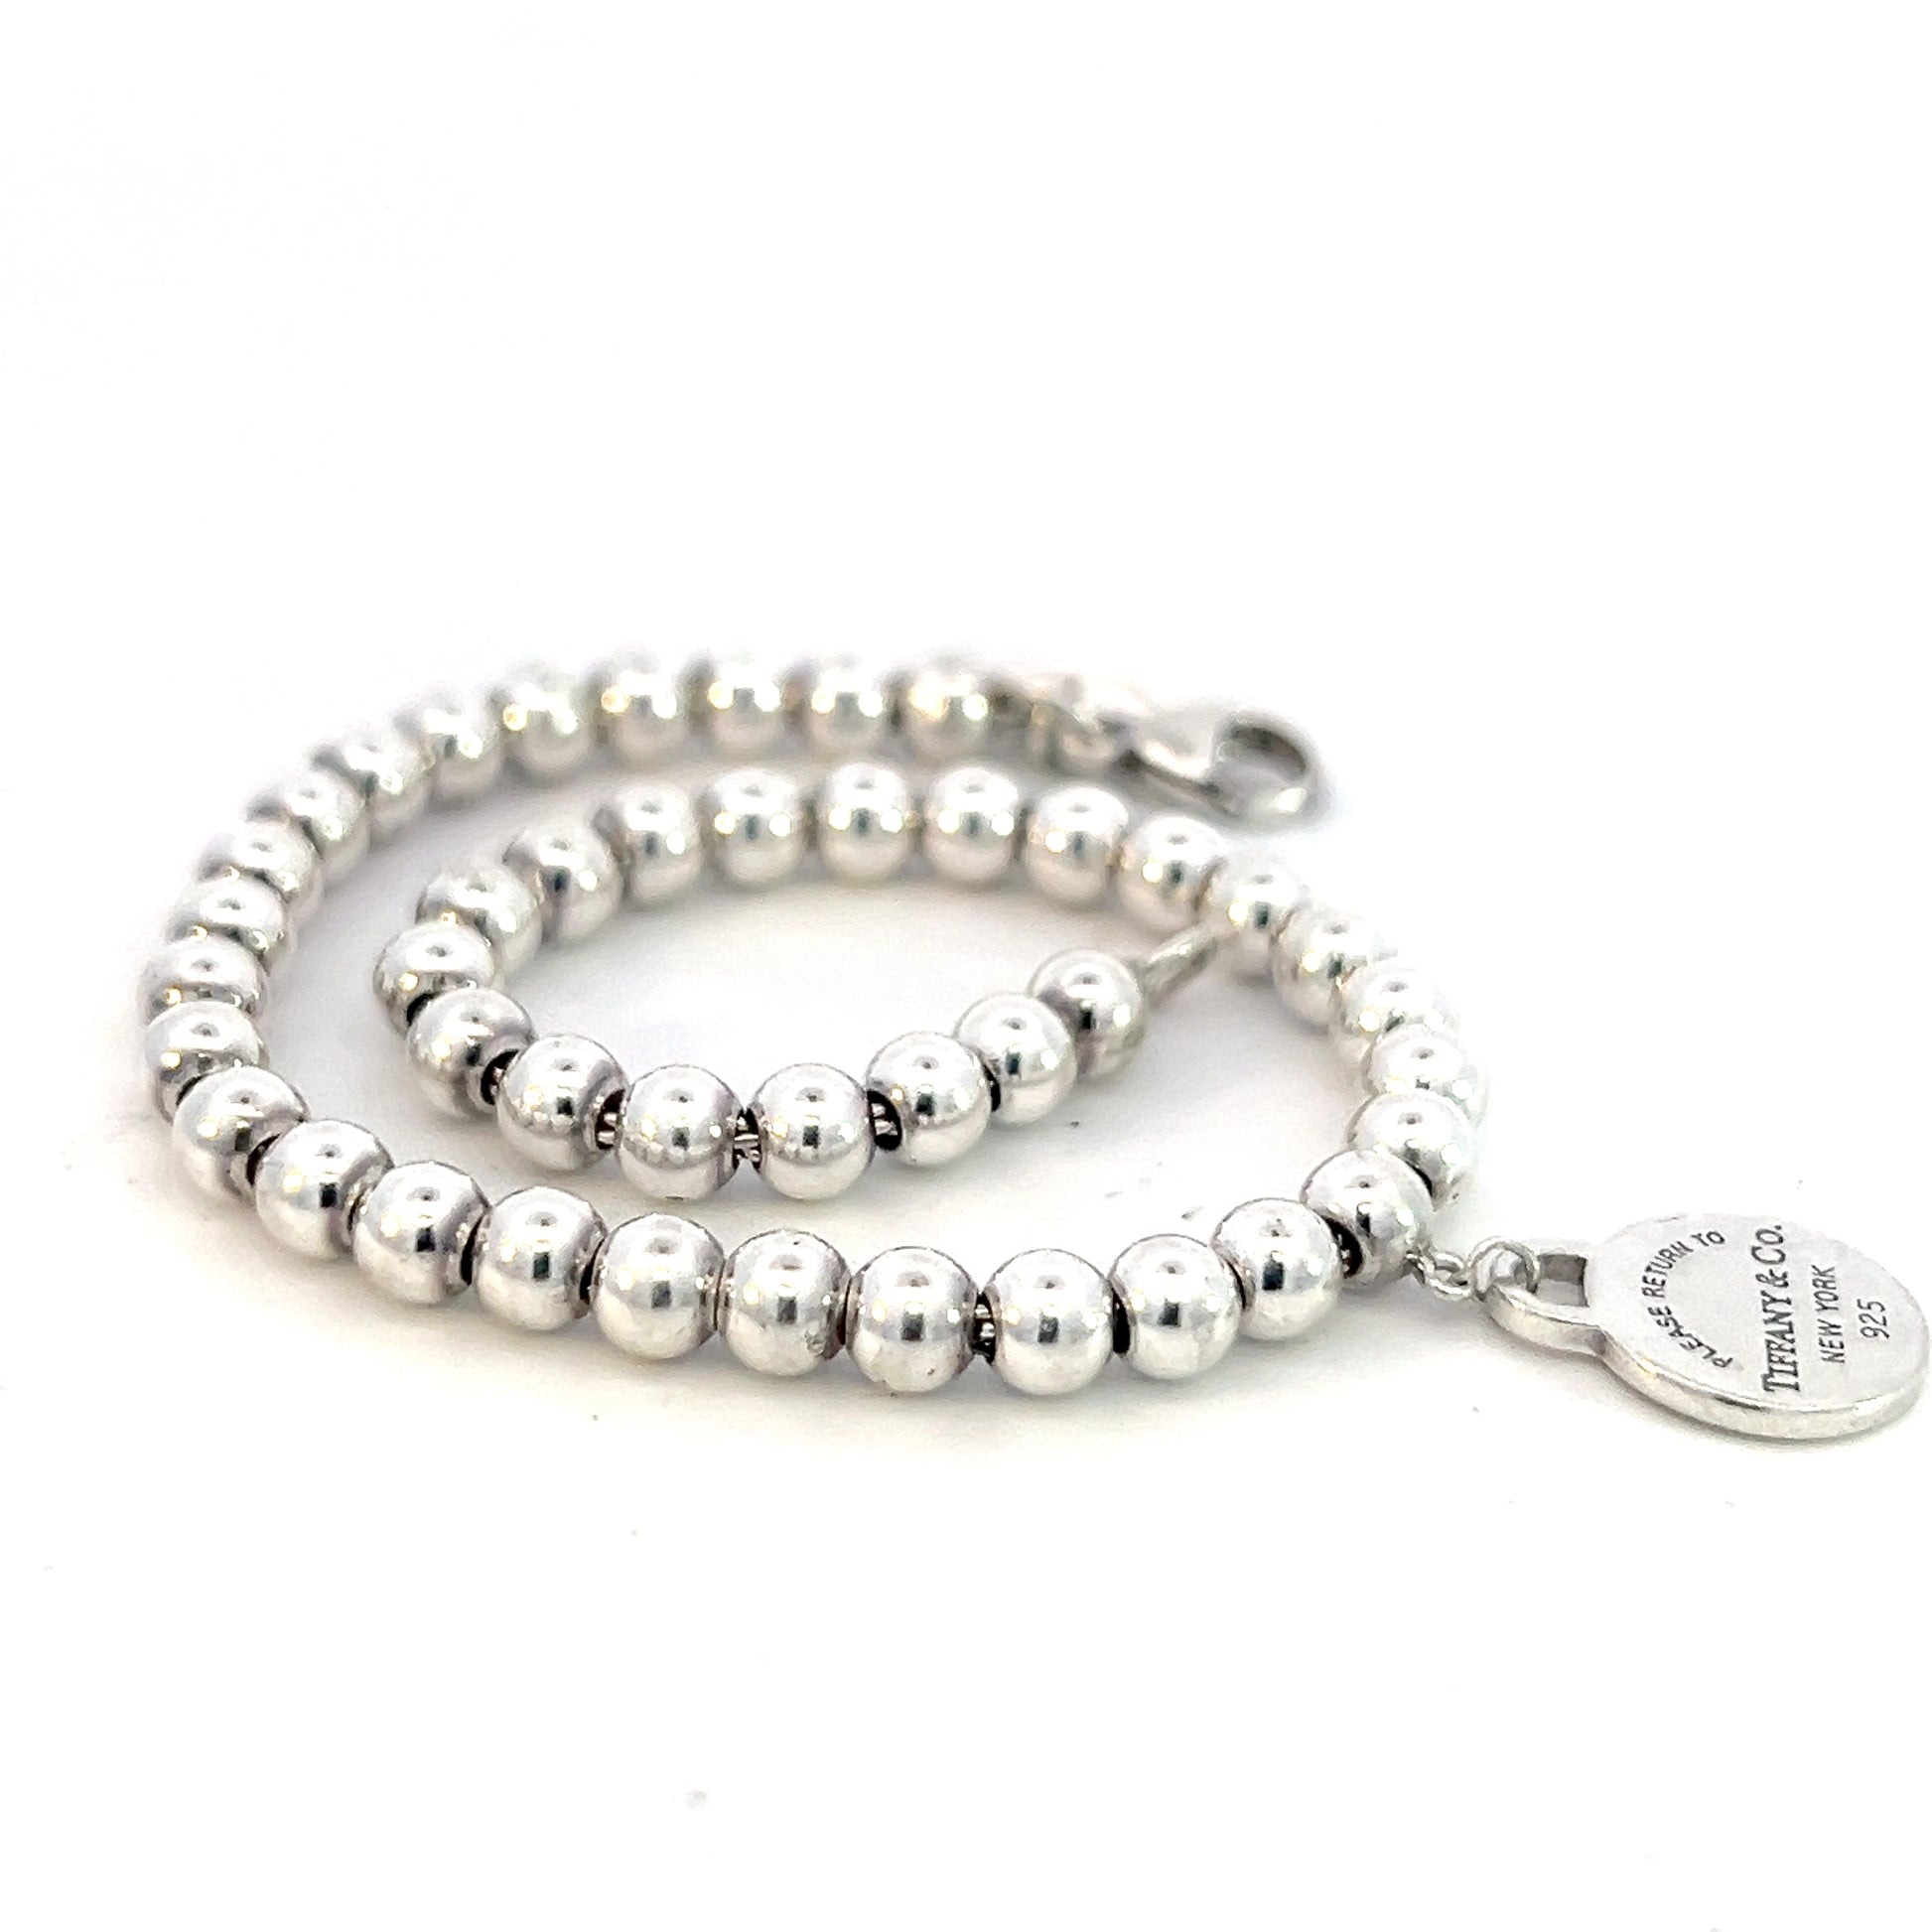 Tiffany & Co Estate Ball Bracelet 7" Sterling Silver 4 mm TIF618 - Certified Fine Jewelry